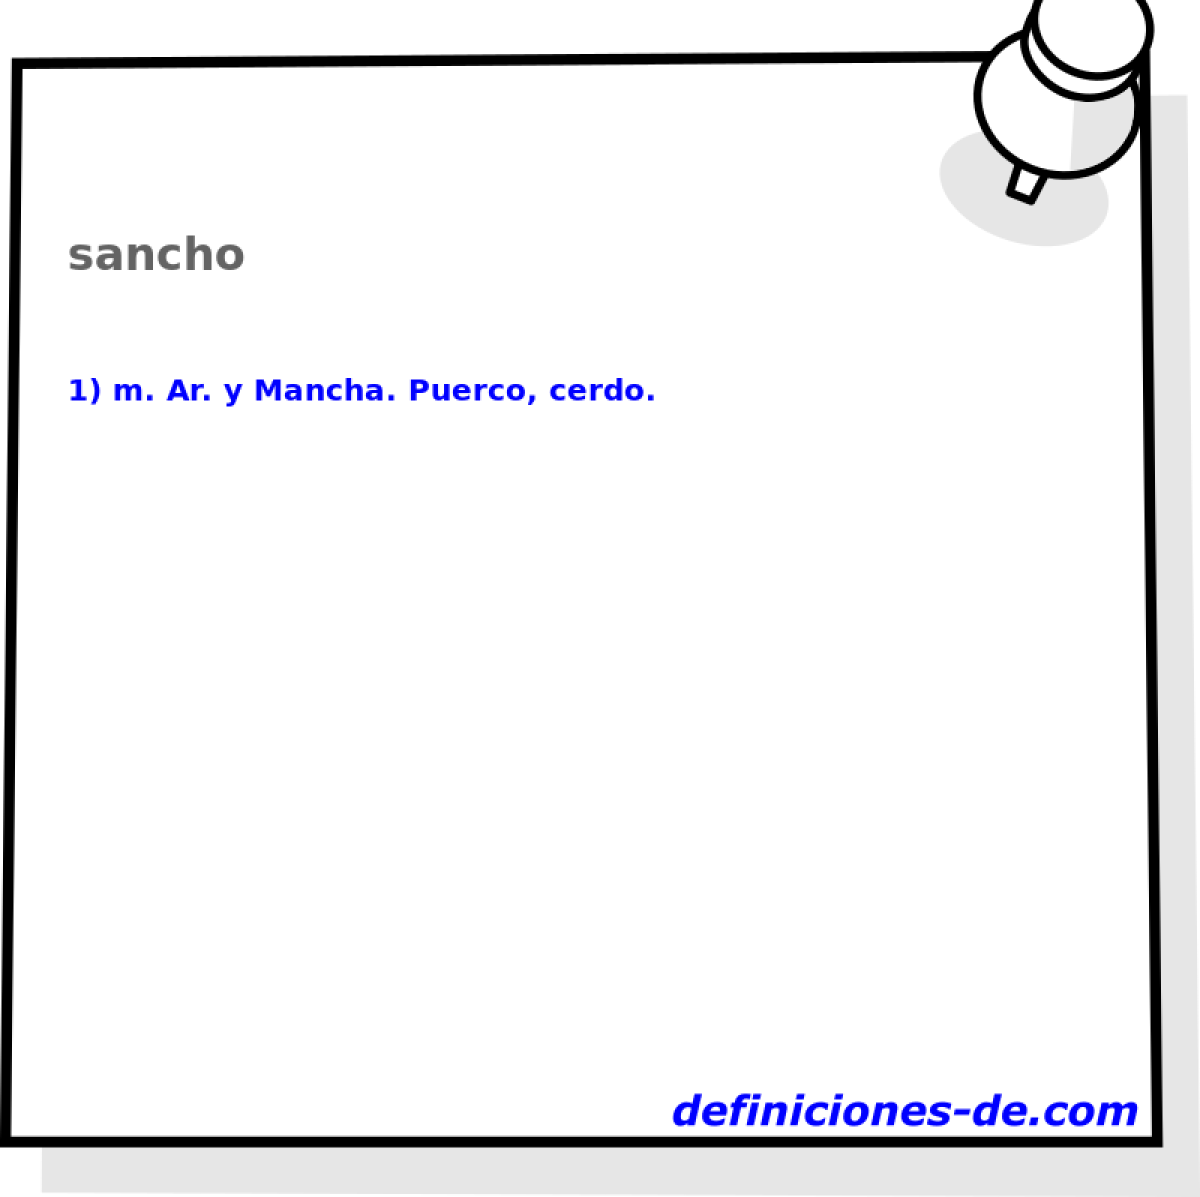 sancho 